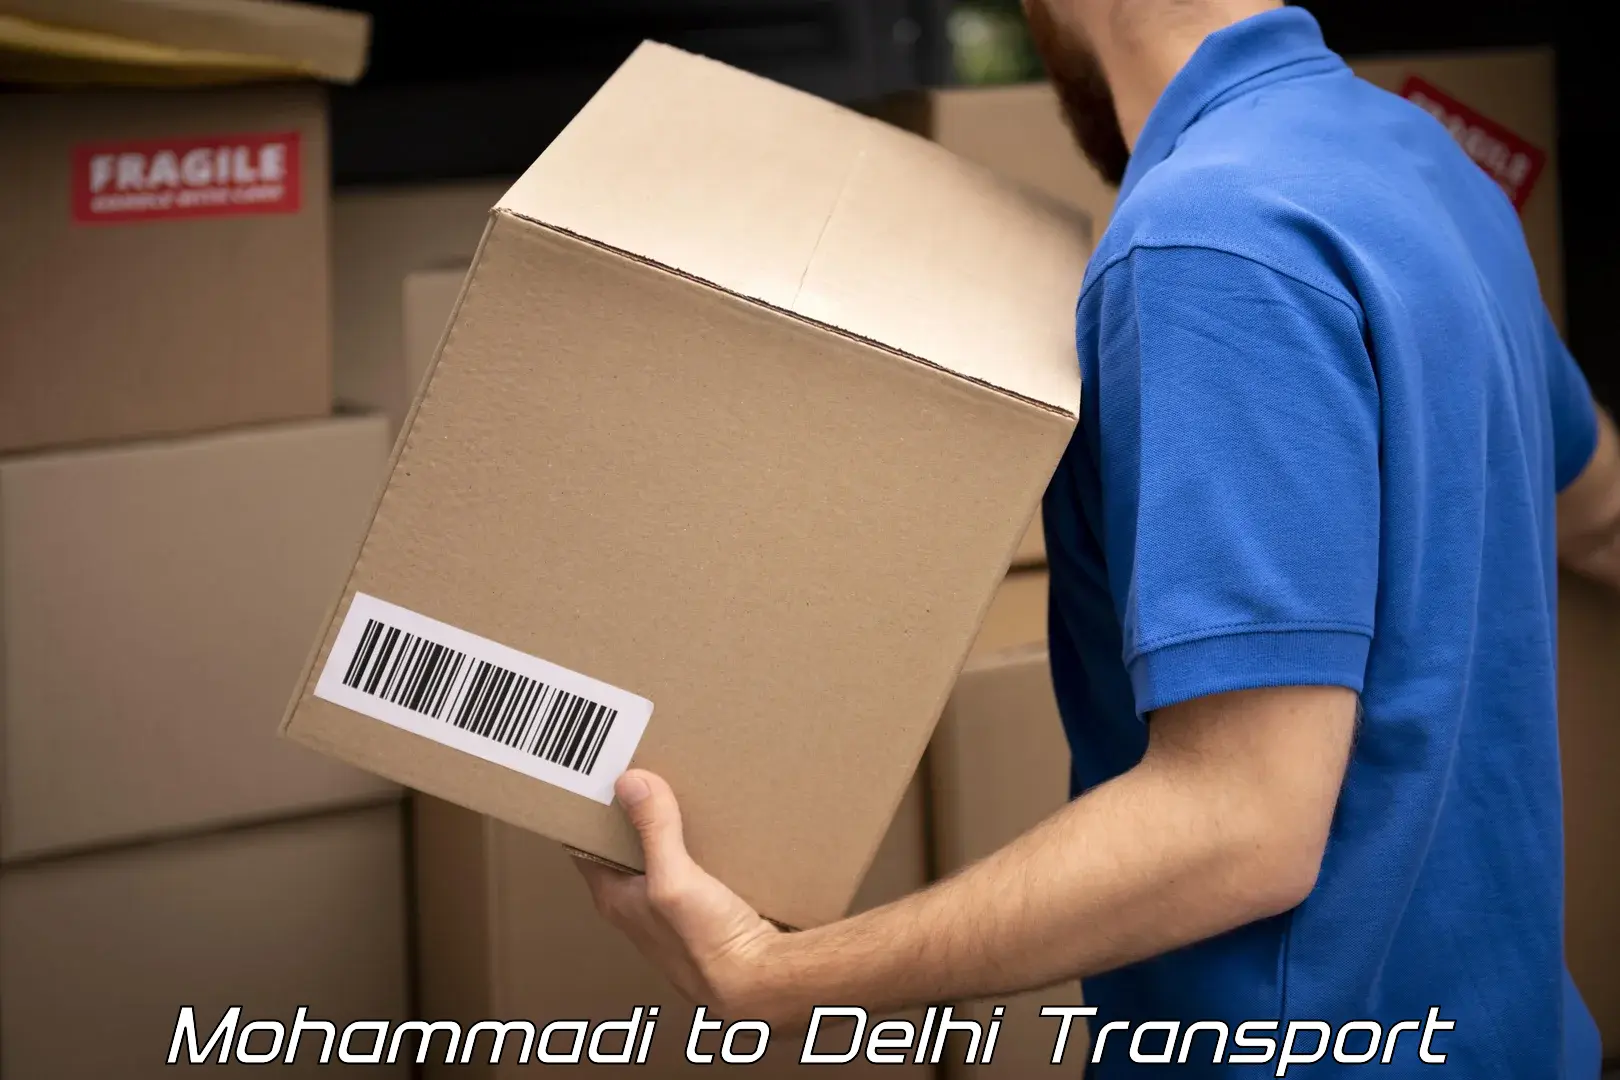 Bike transport service in Mohammadi to Delhi